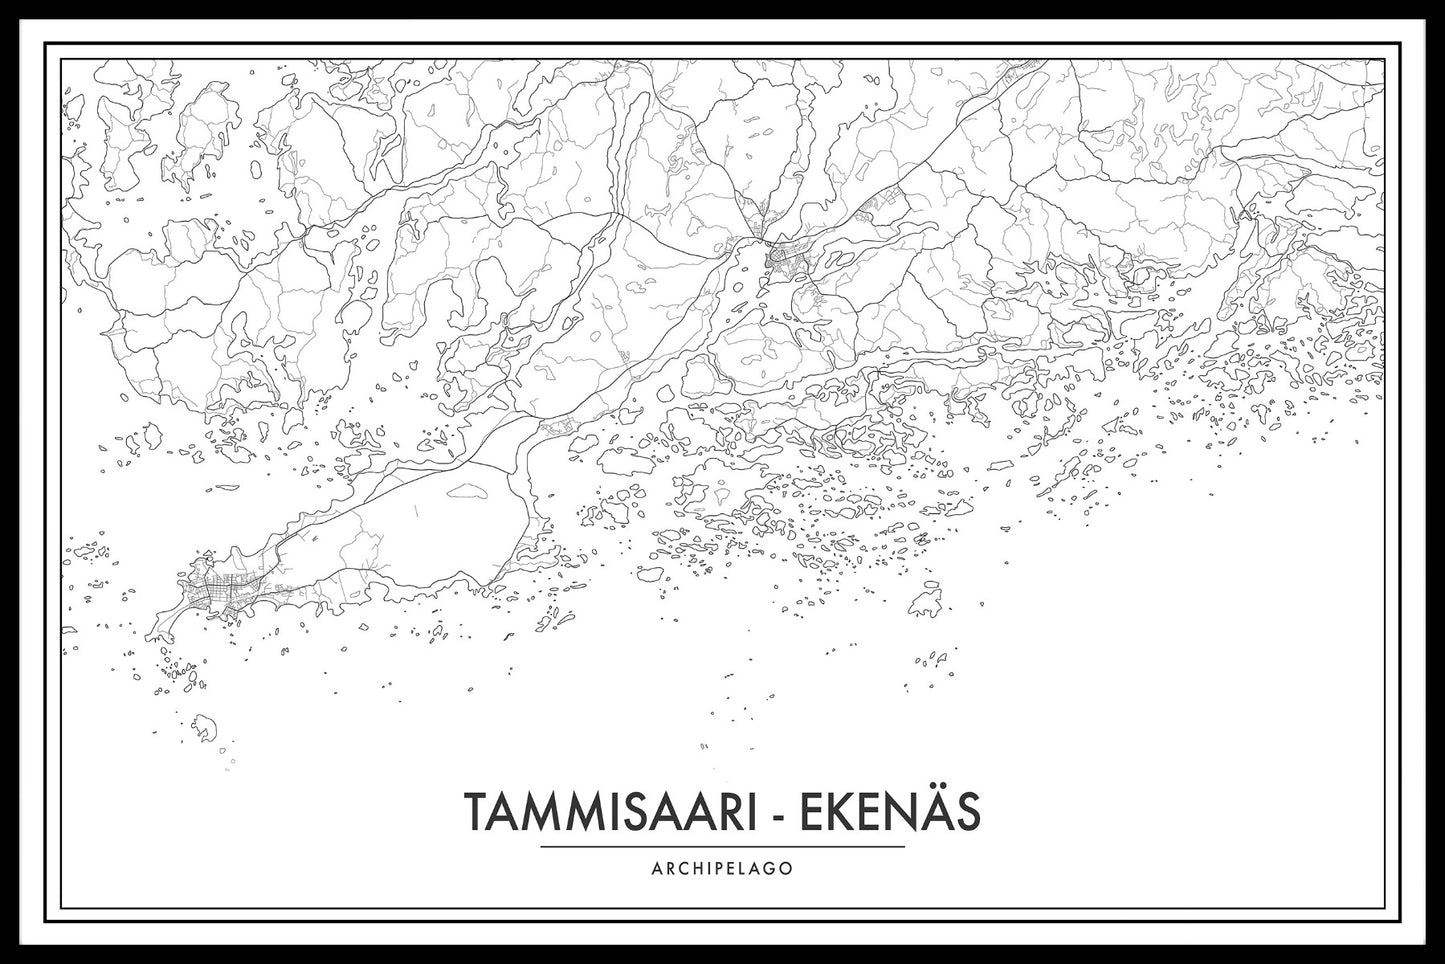 Tammisaari Archipelago Map juliste